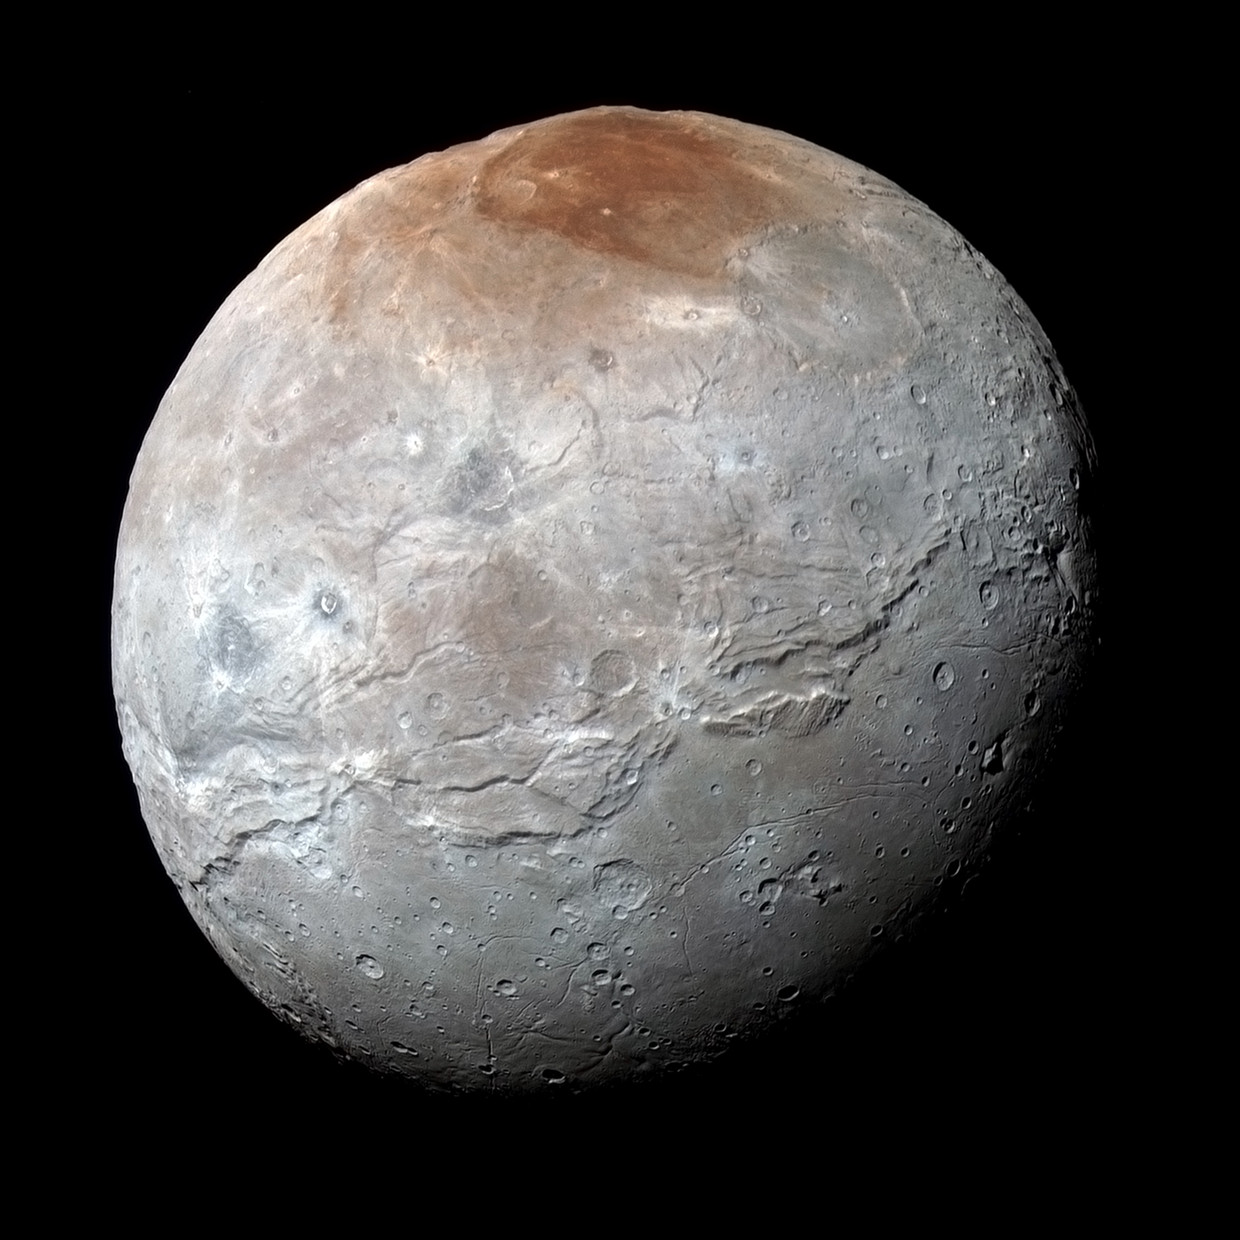 De maan Charon, die rond Pluto cirkelt. De maan werd pas in 1978 ontdekt. Hij is met zijn doorsnede van 1212 kilometer aan de grote kant, terwijl Pluto met een doorsnede van 2377 kilometer voor een planeet nogal klein is. Beeld Foto NASA/JPL/Southwest Research Institute